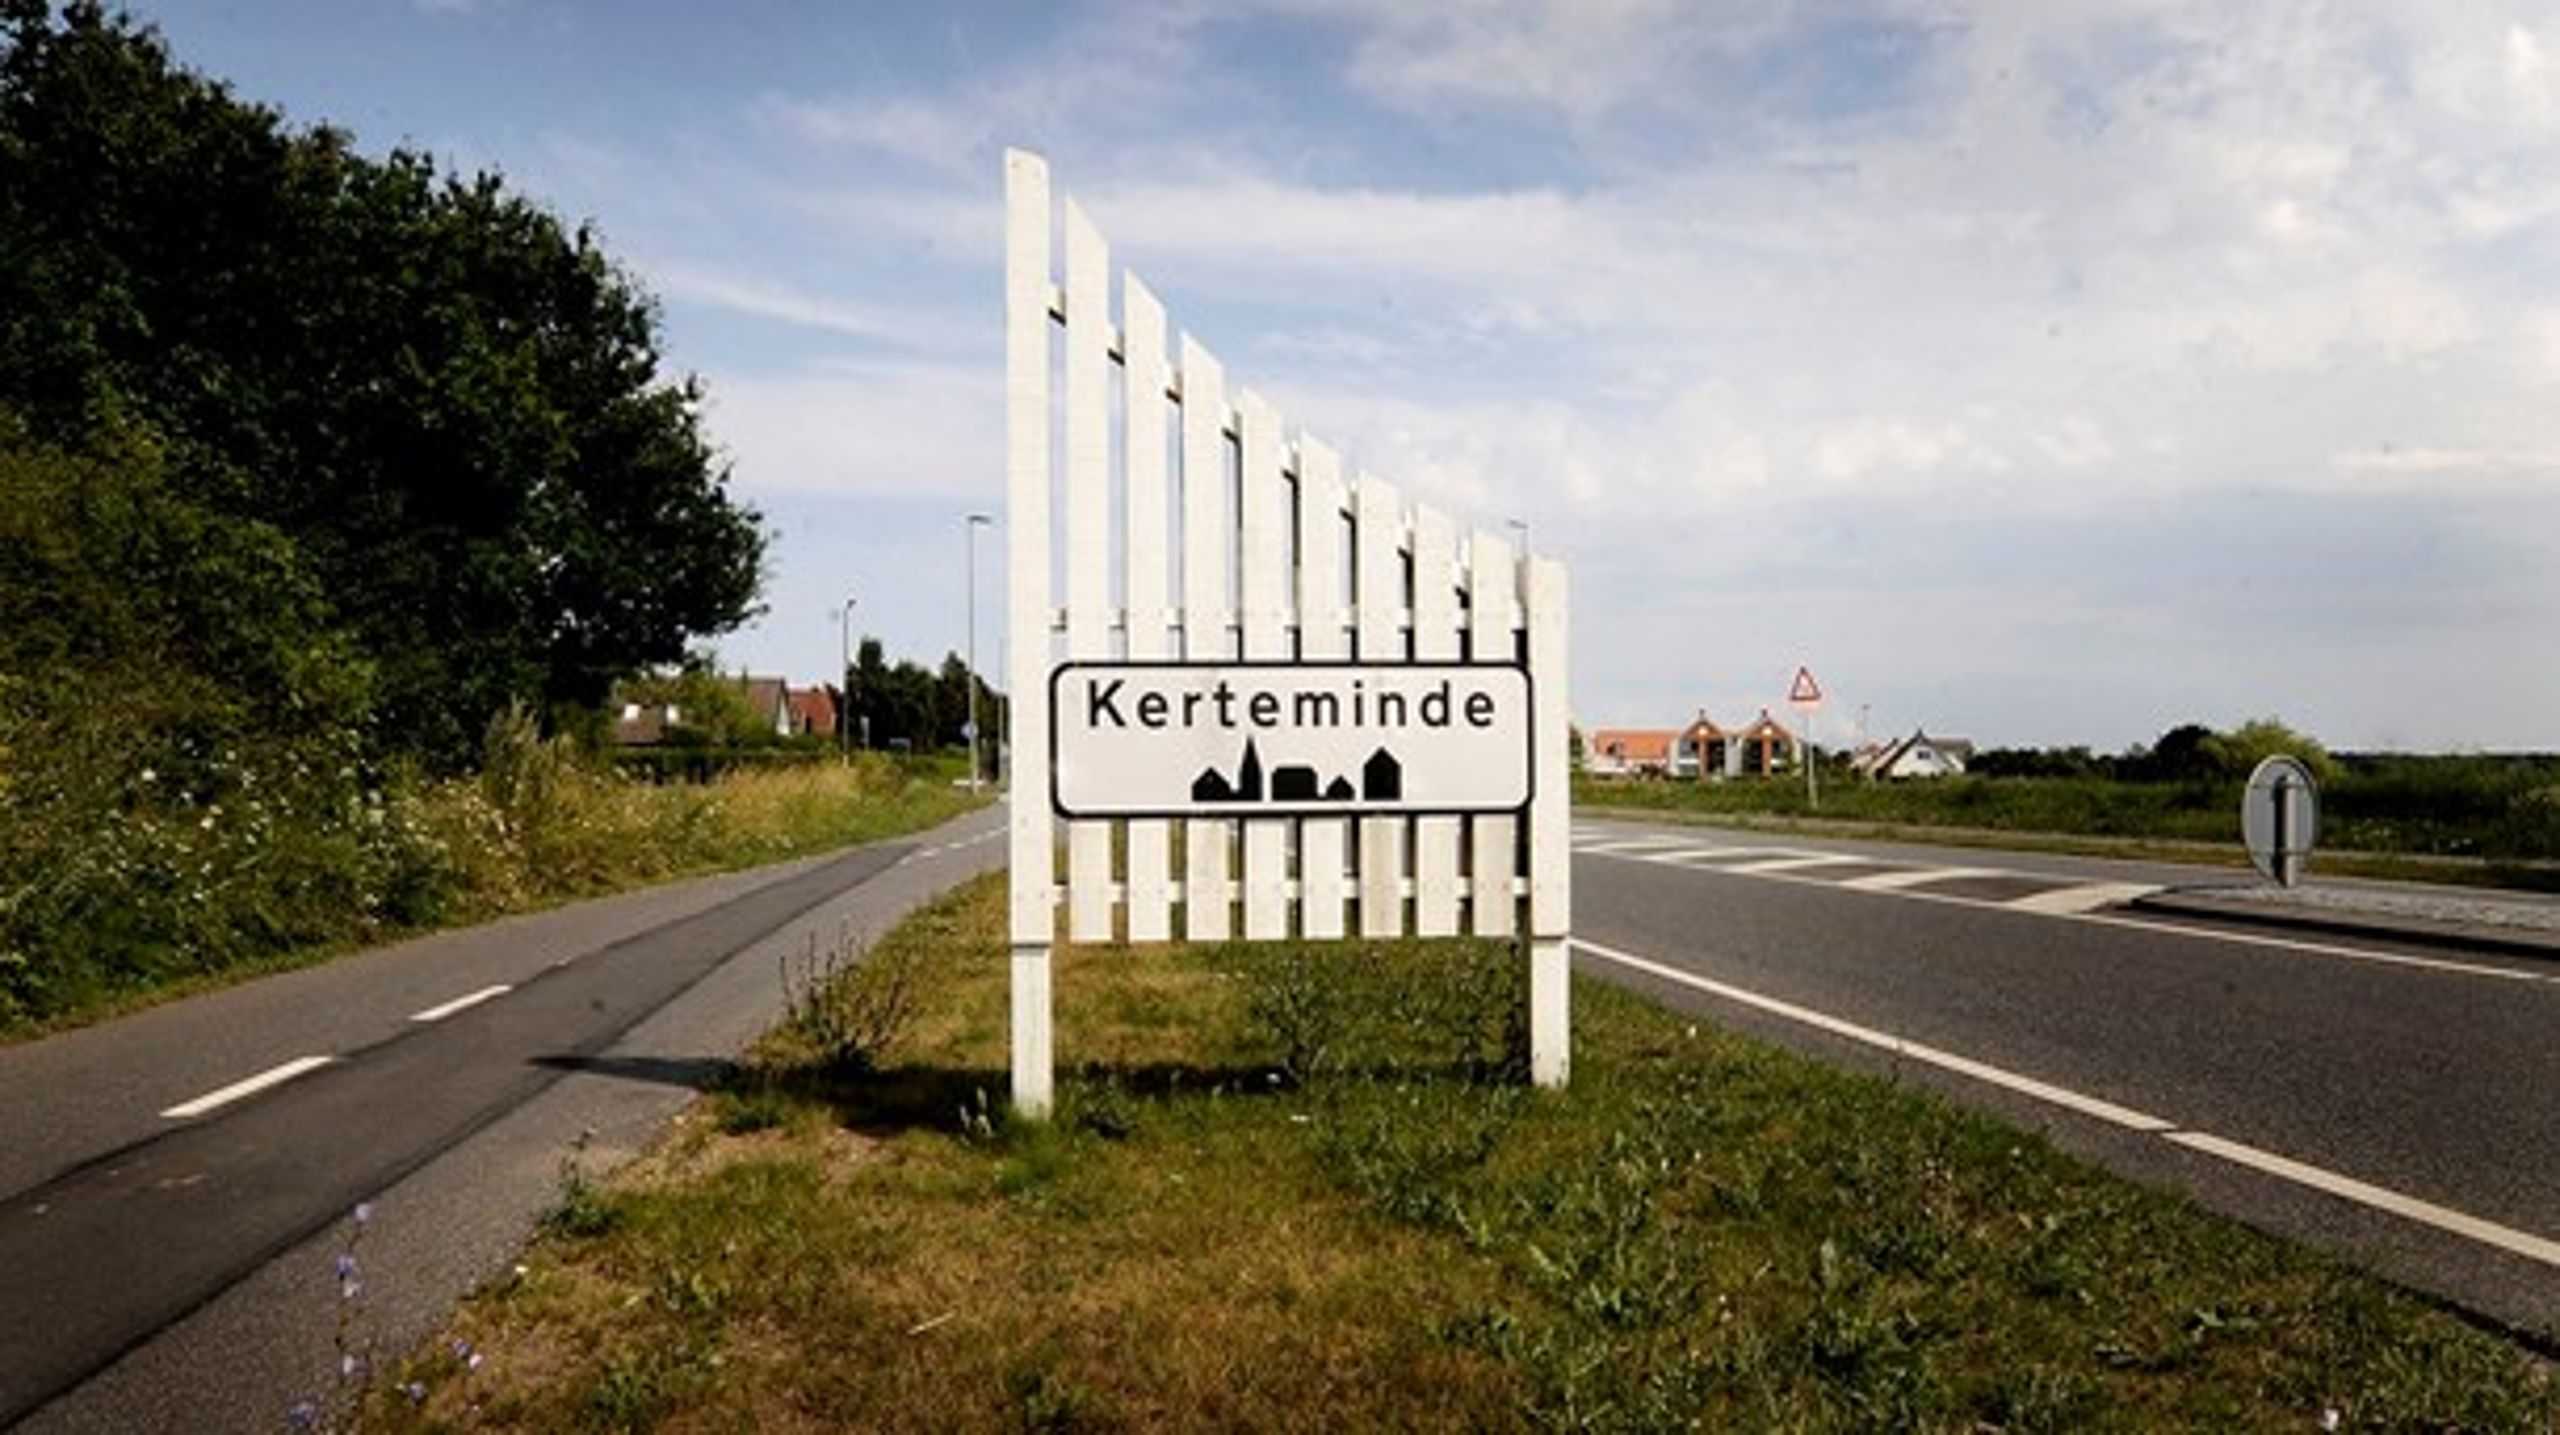 Kerteminde Kommune indledte i 2019 et samarbejde med et konsulentfirma om at finde besparelser blandt psykisk udsatte og handicappede borgere.